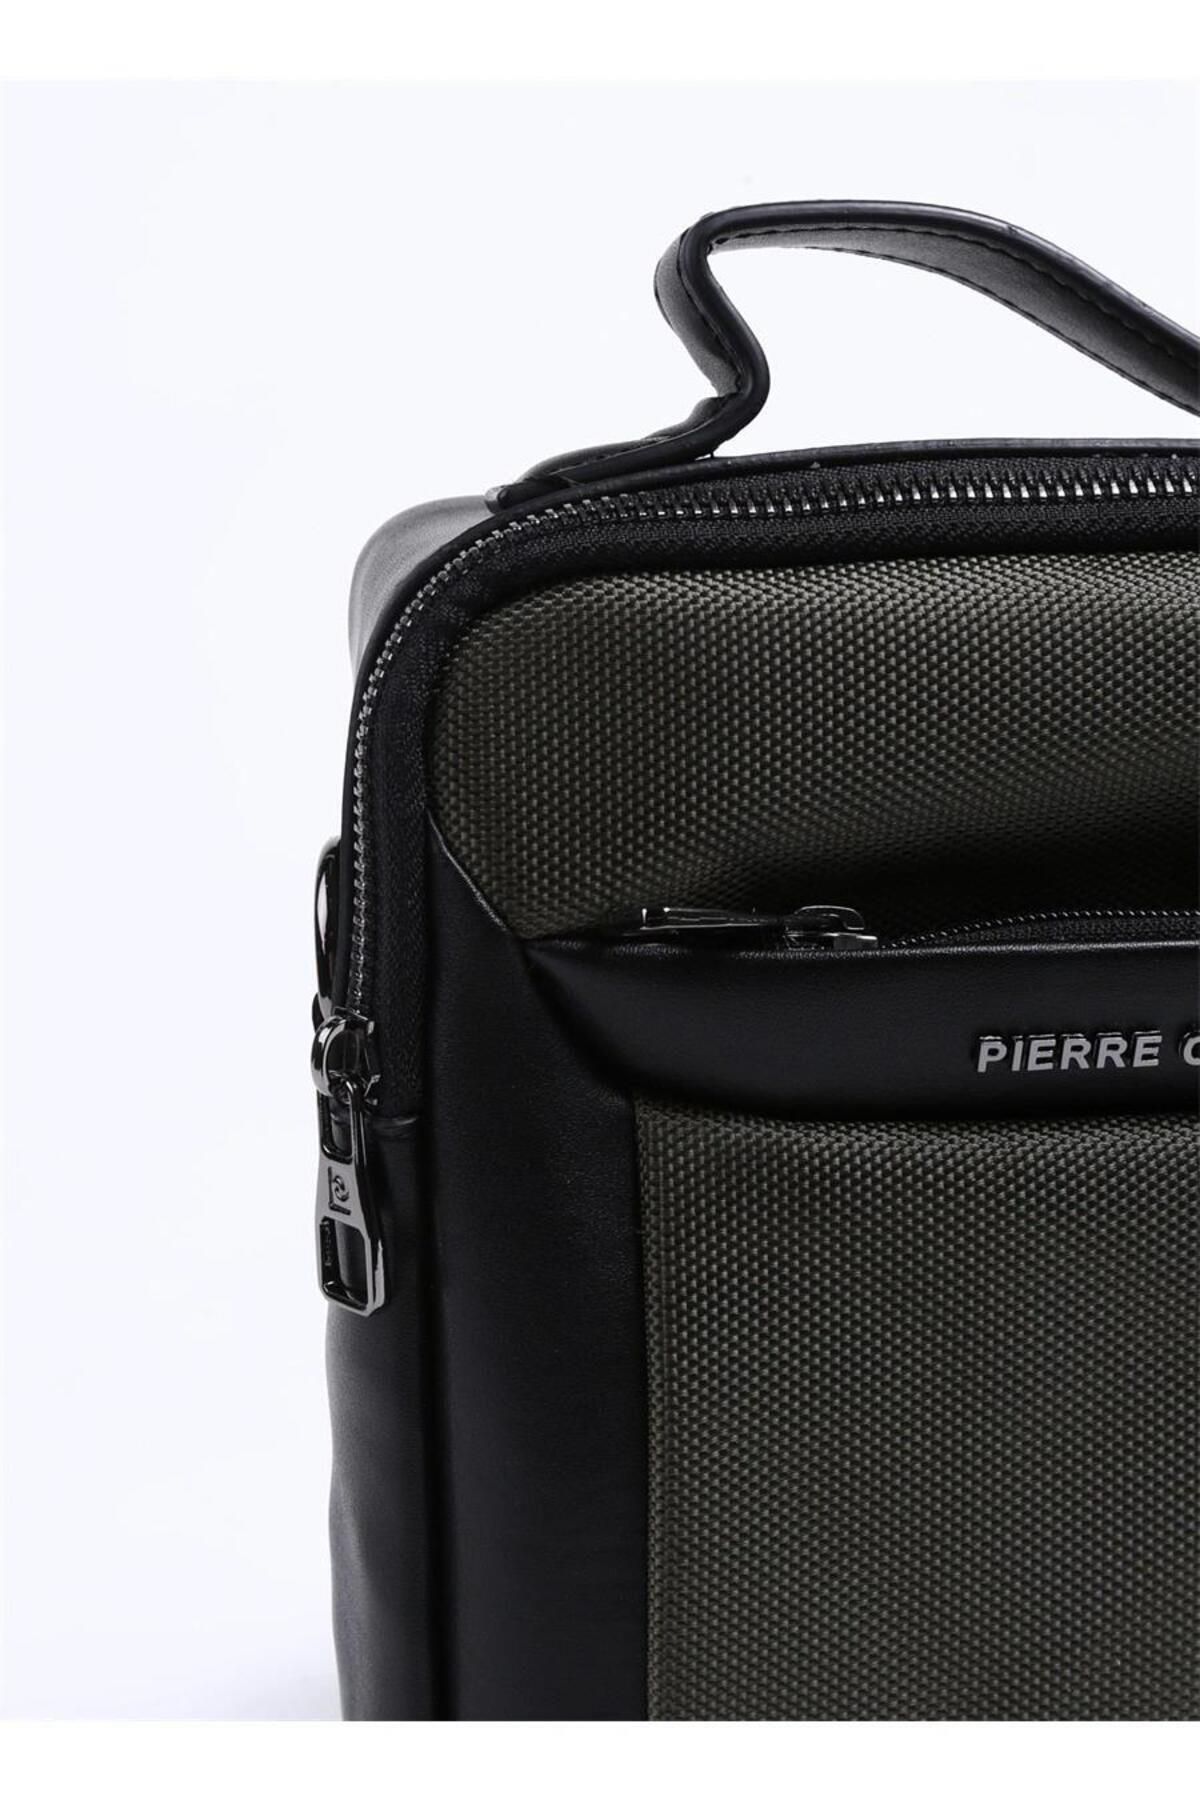 Pierre Cardin Cross Bag Green PC001196